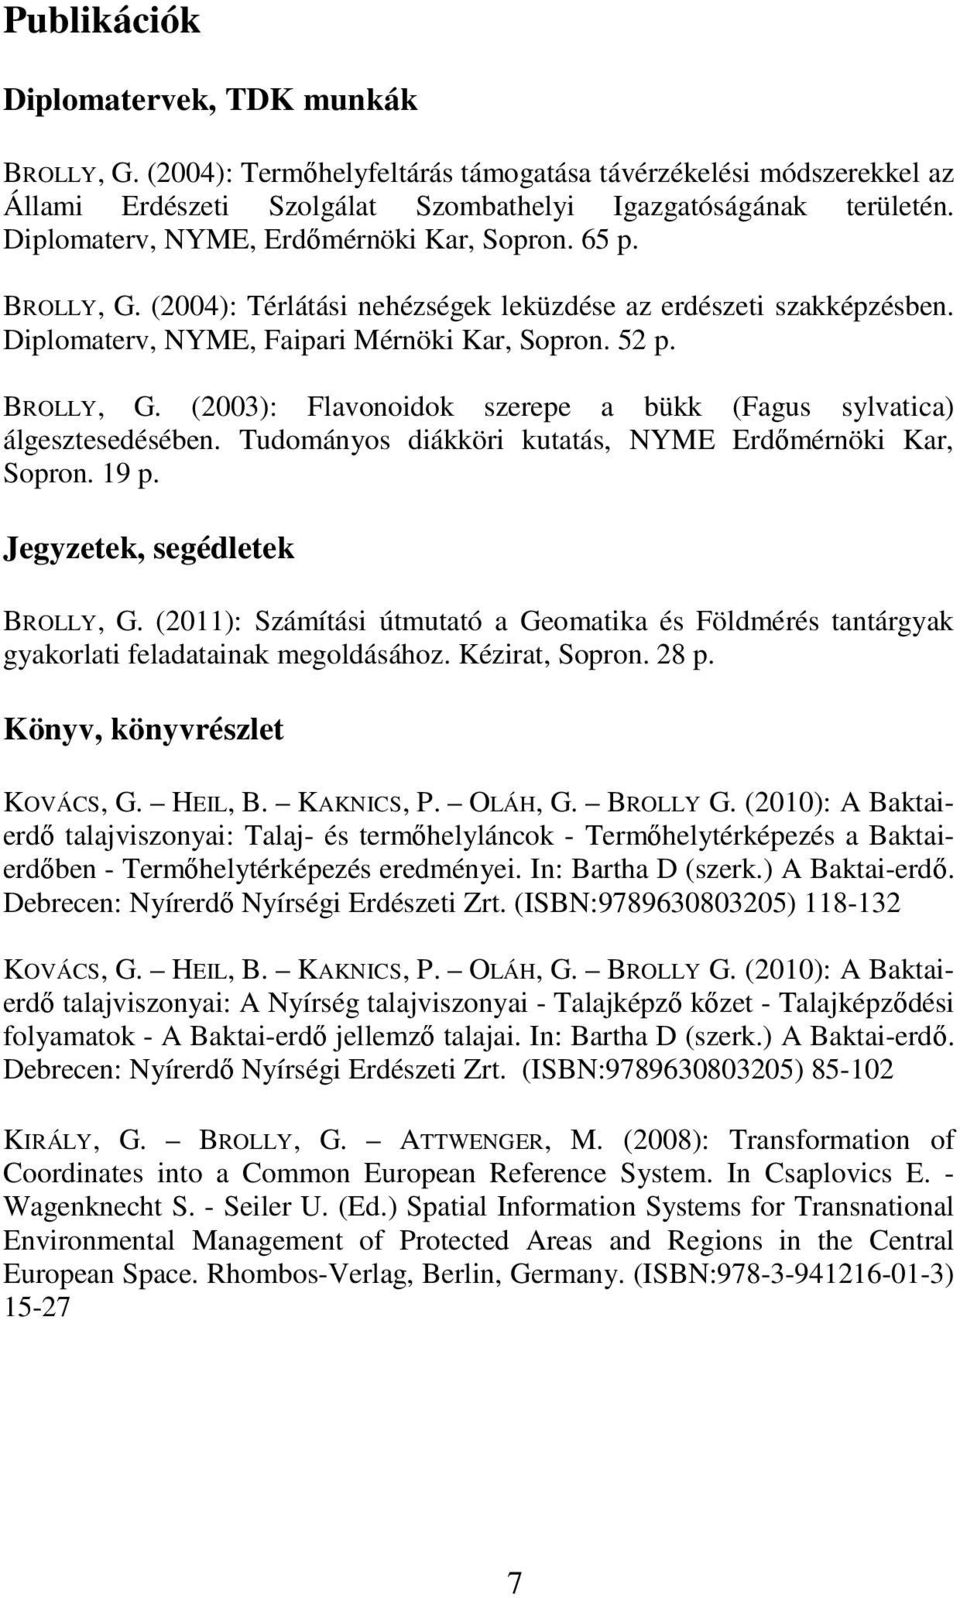 Tudományos diákköri kutatás, NYME Erdőmérnöki Kar, Sopron. 19 p. Jegyzetek, segédletek BROLLY, G. (2011): Számítási útmutató a Geomatika és Földmérés tantárgyak gyakorlati feladatainak megoldásához.